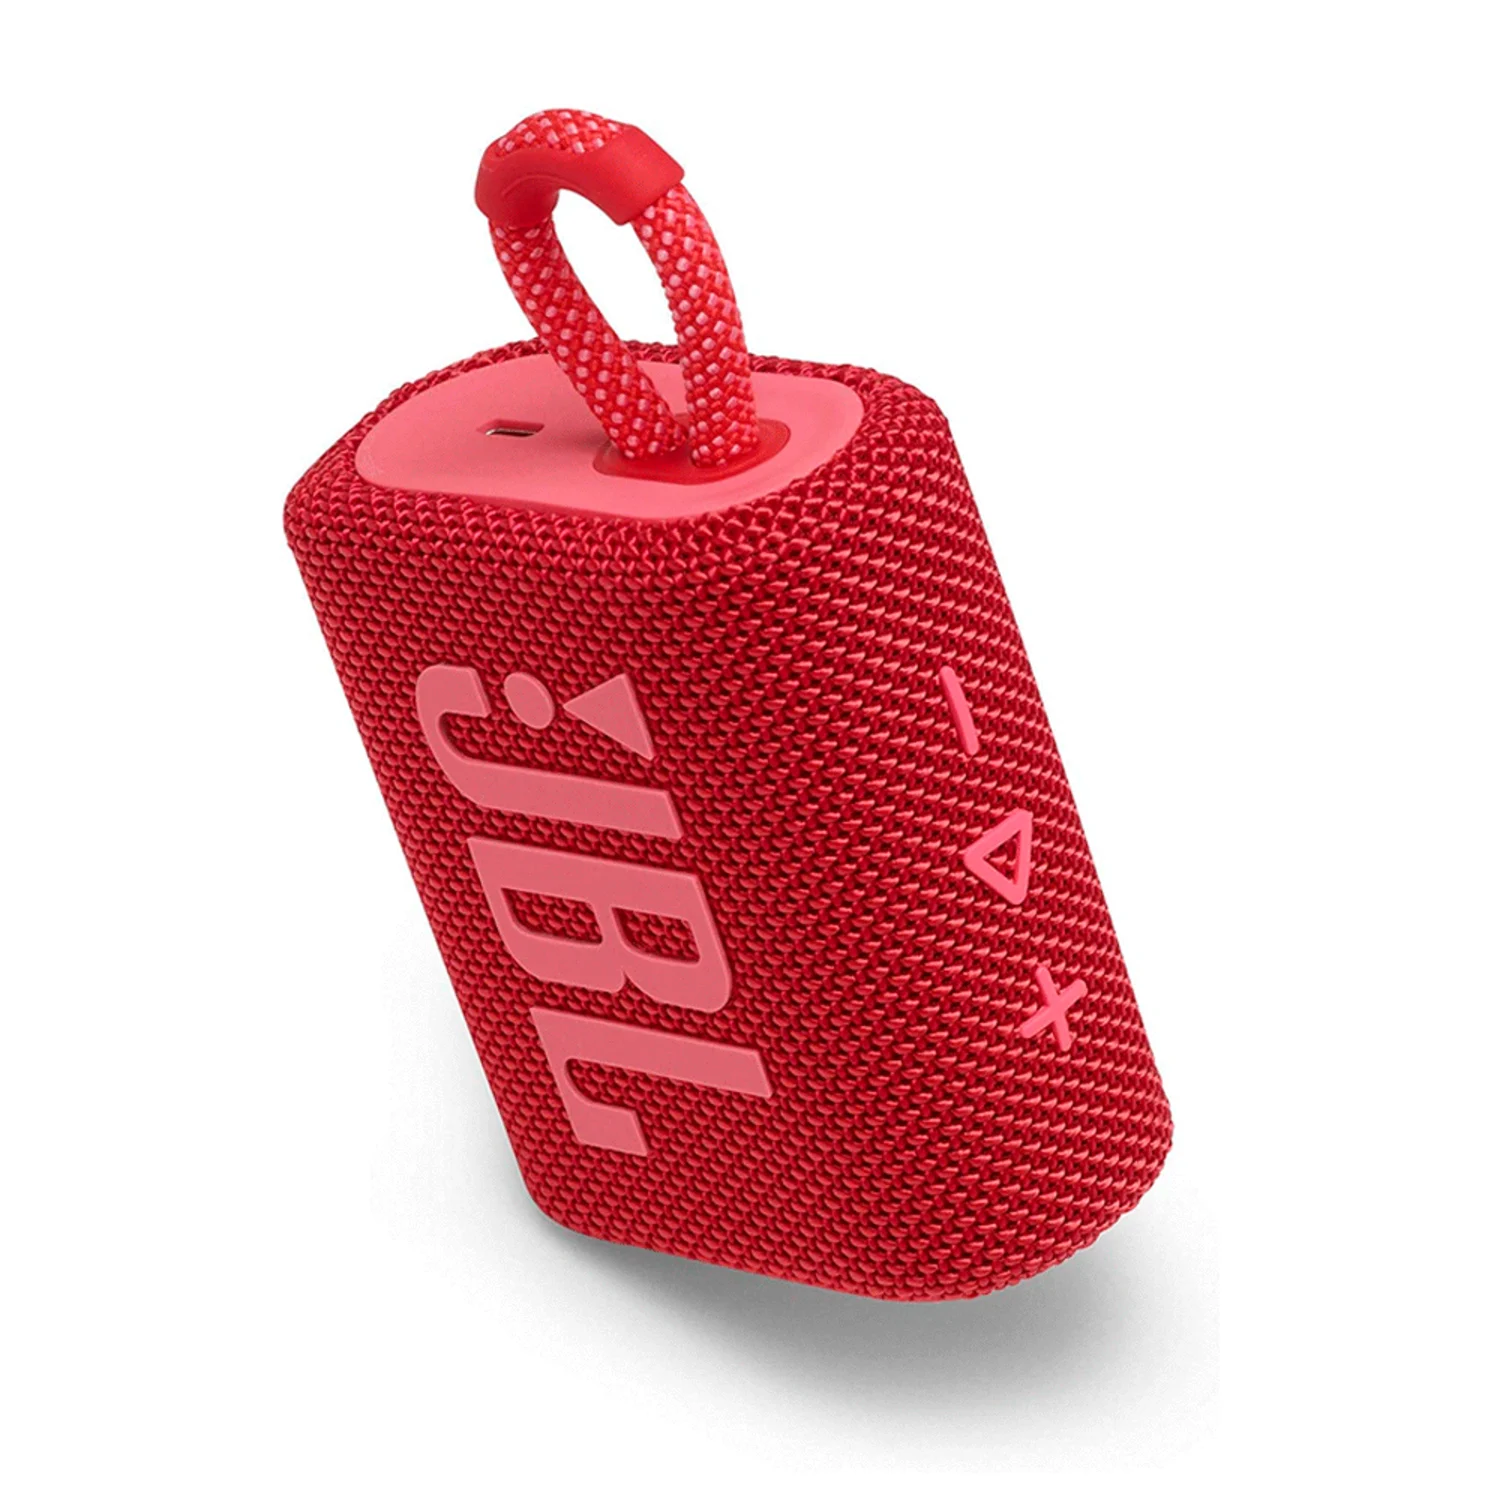 Caixa de Som JBL GO 3 - Vermelho